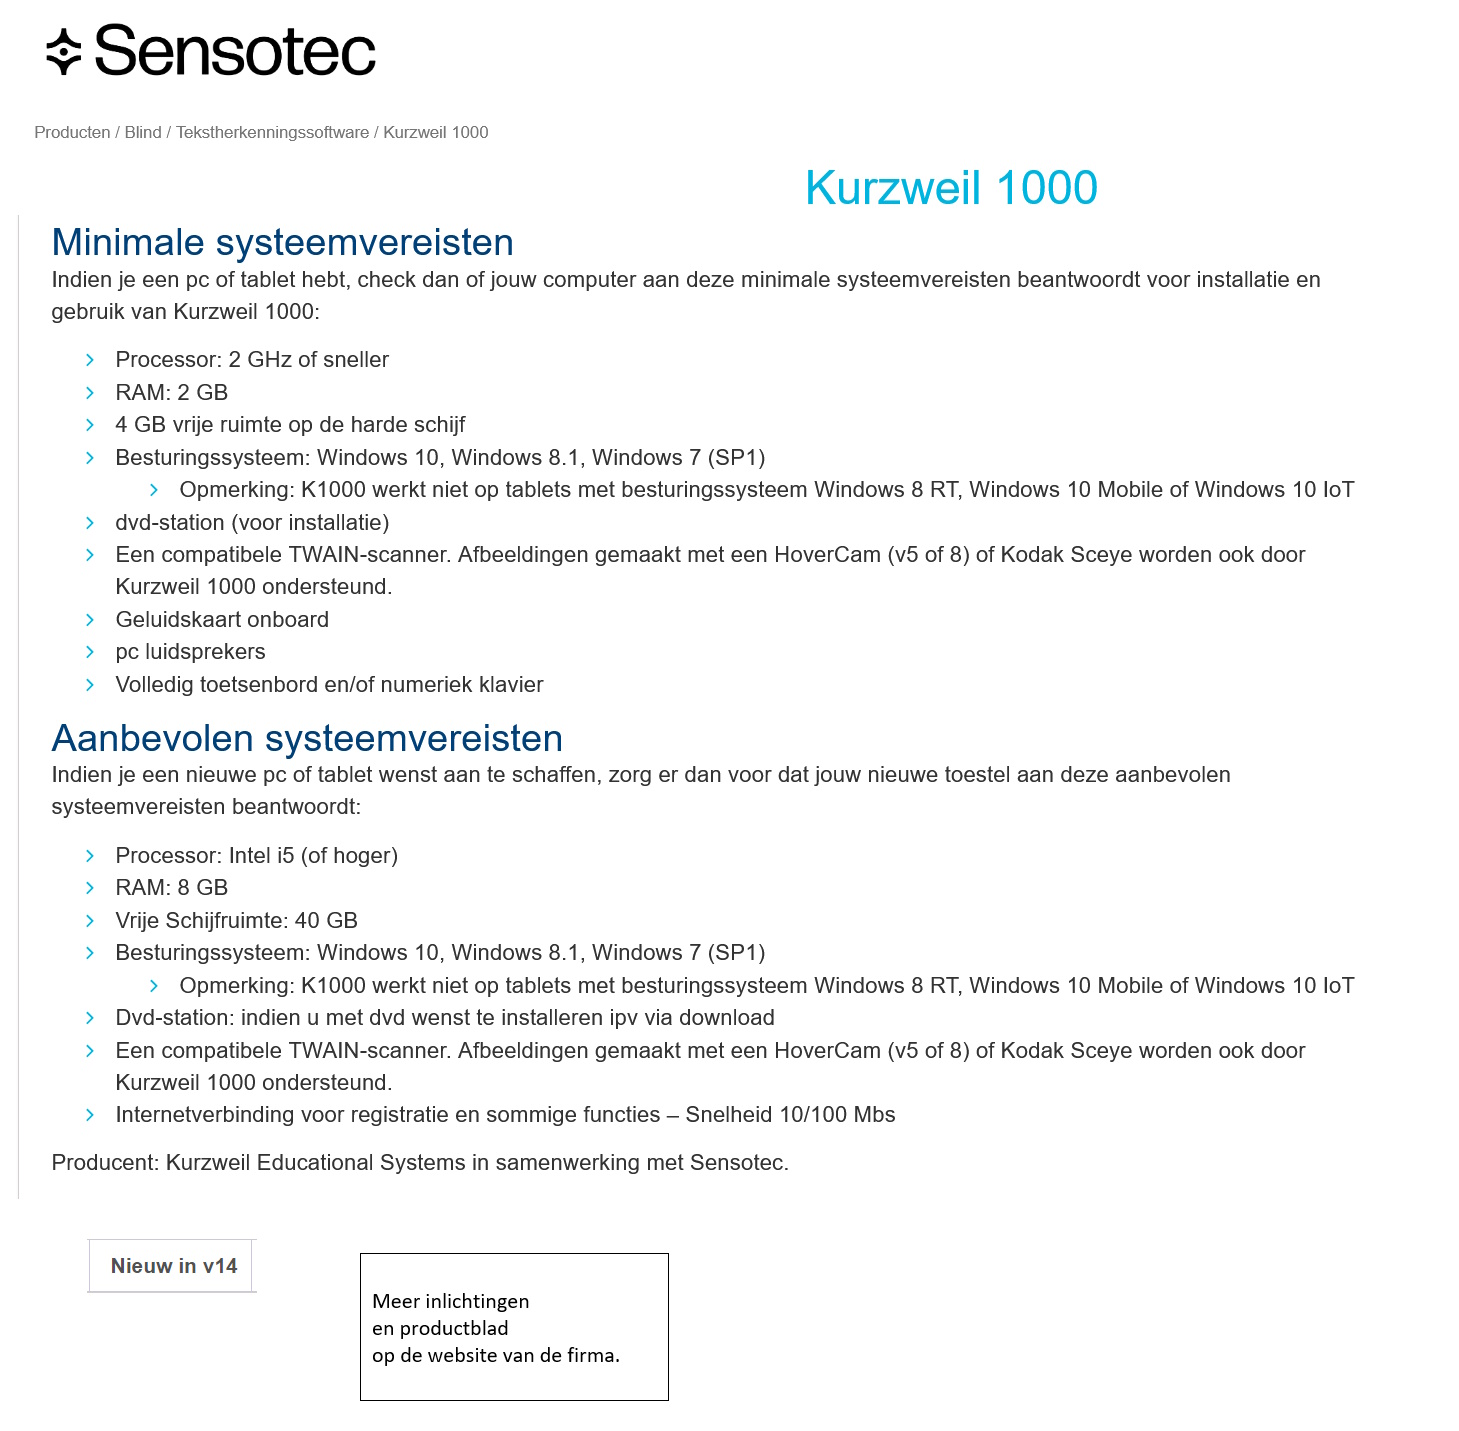 toegevoegd document 3 van Kurzweil 1000  